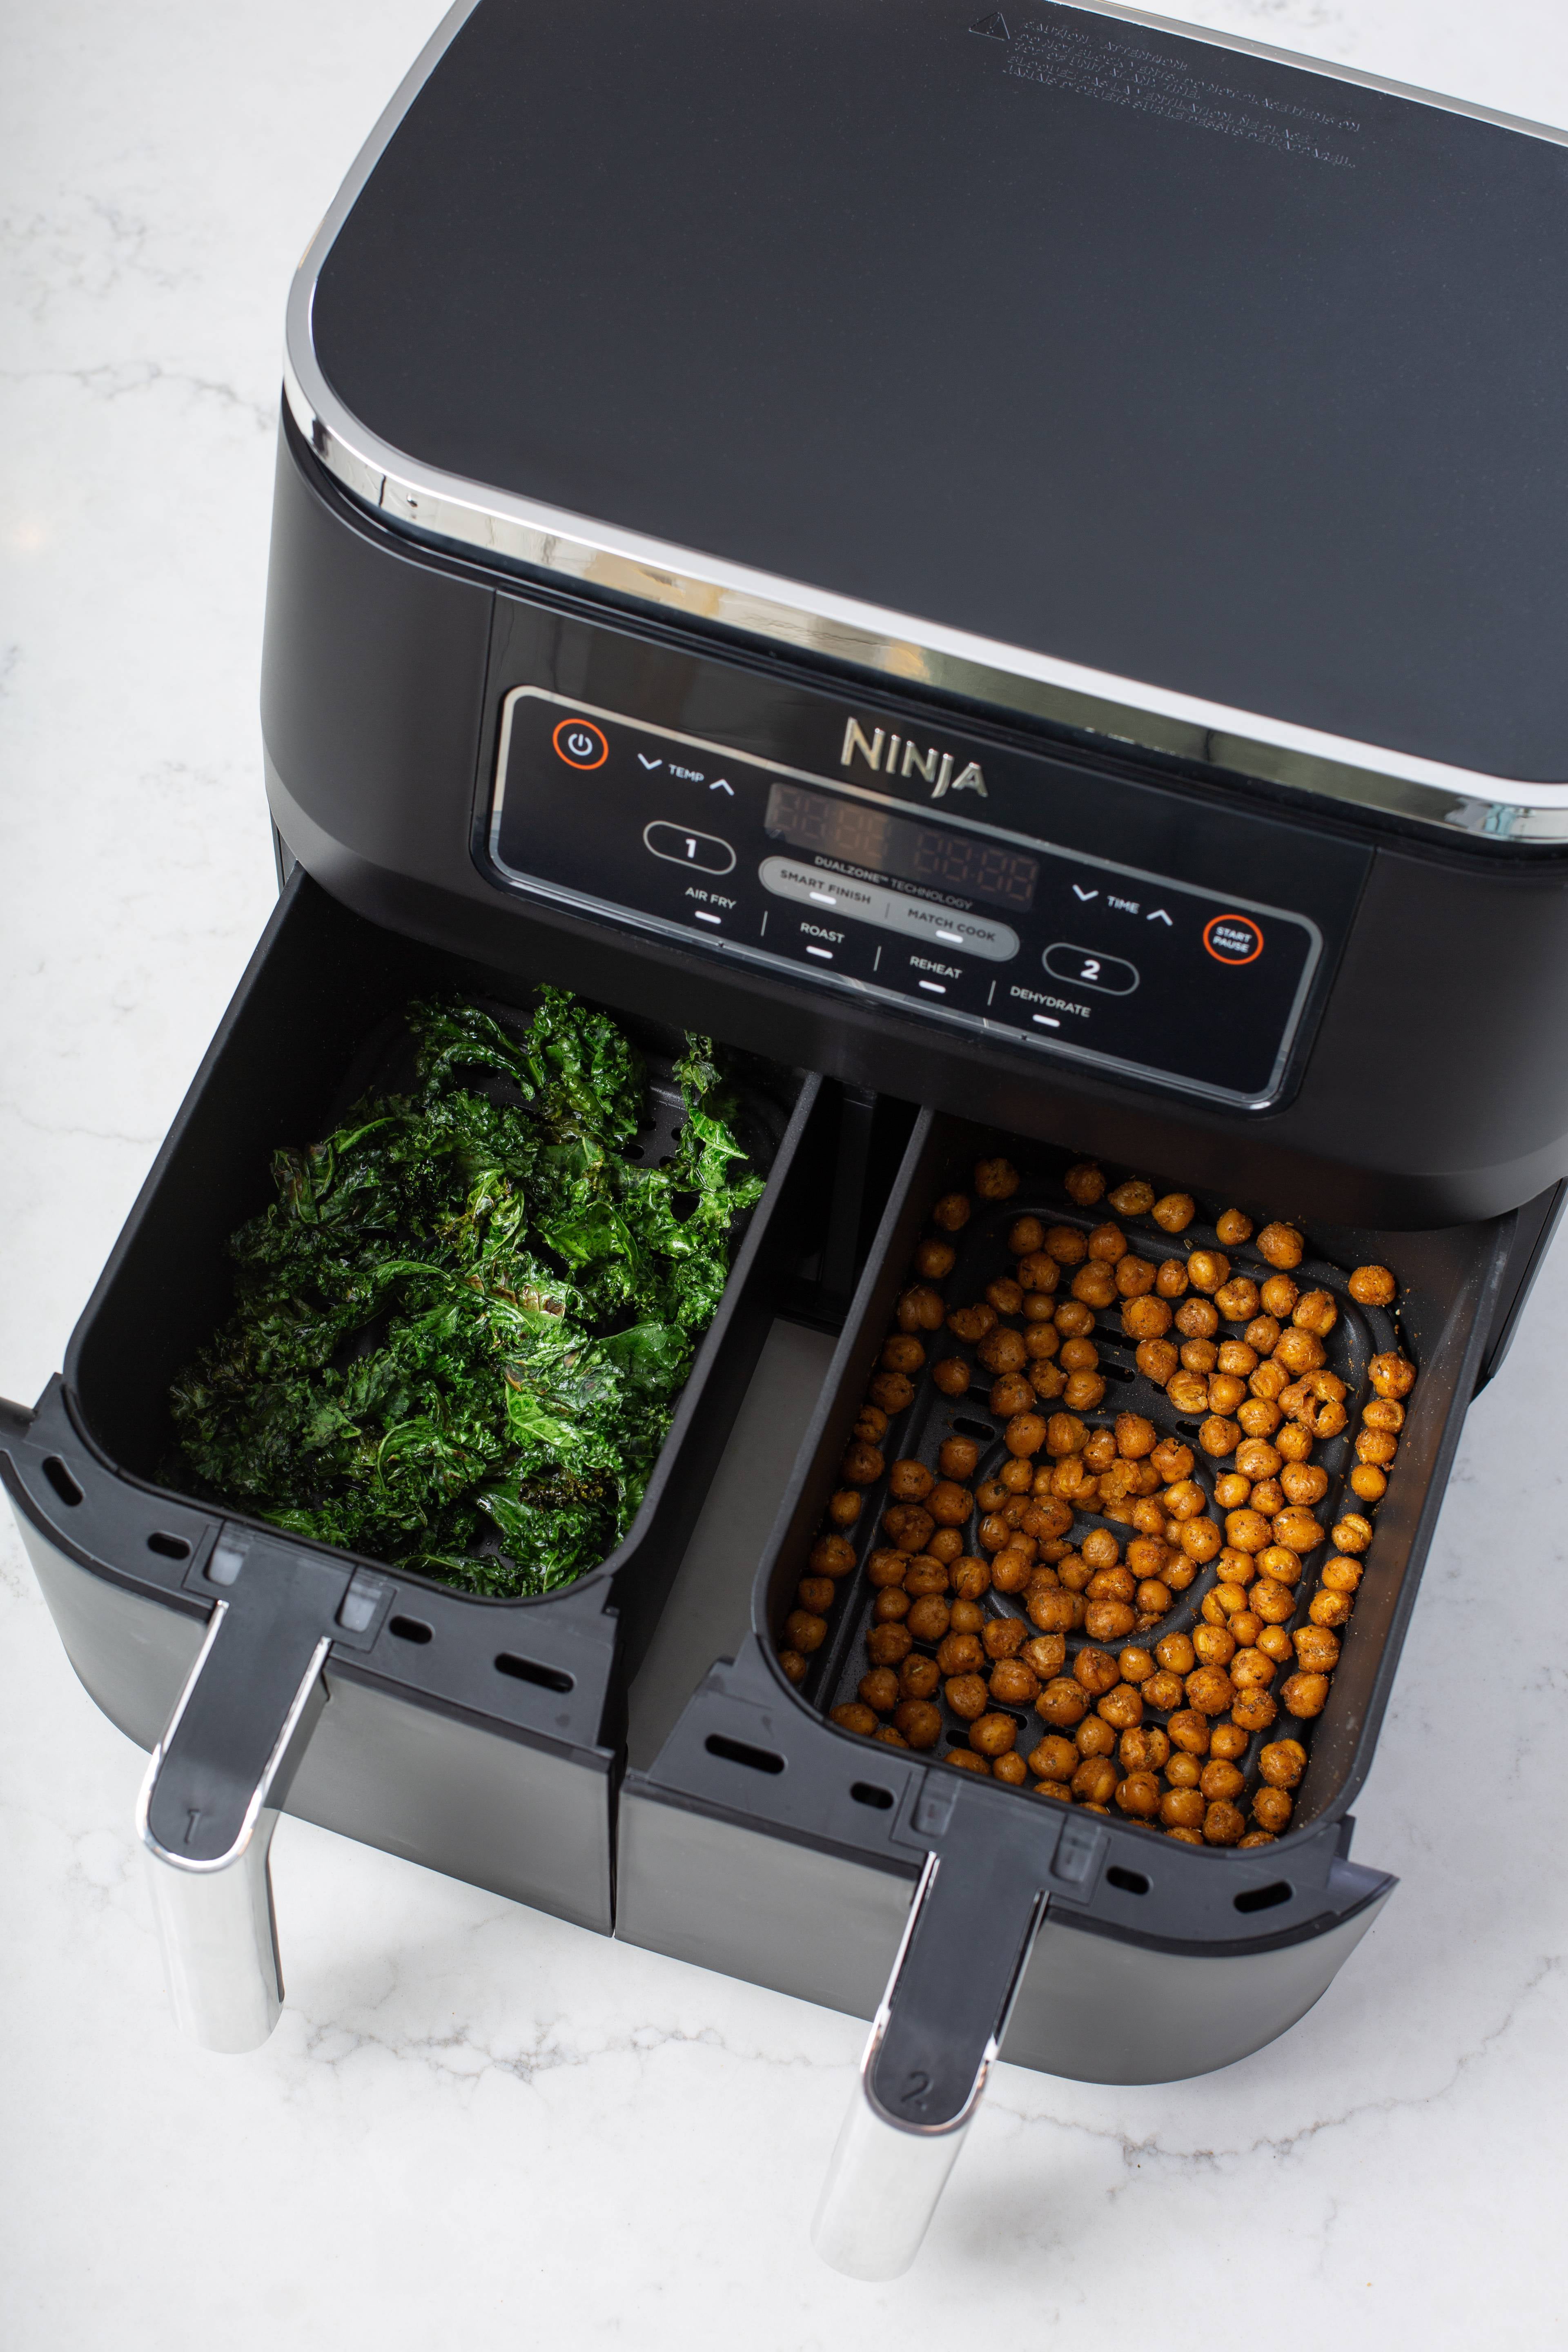 renewed Ninja Foodi 10-in-1 Multi-Cooker Air Fryer now $100 (Reg.  $200 new)